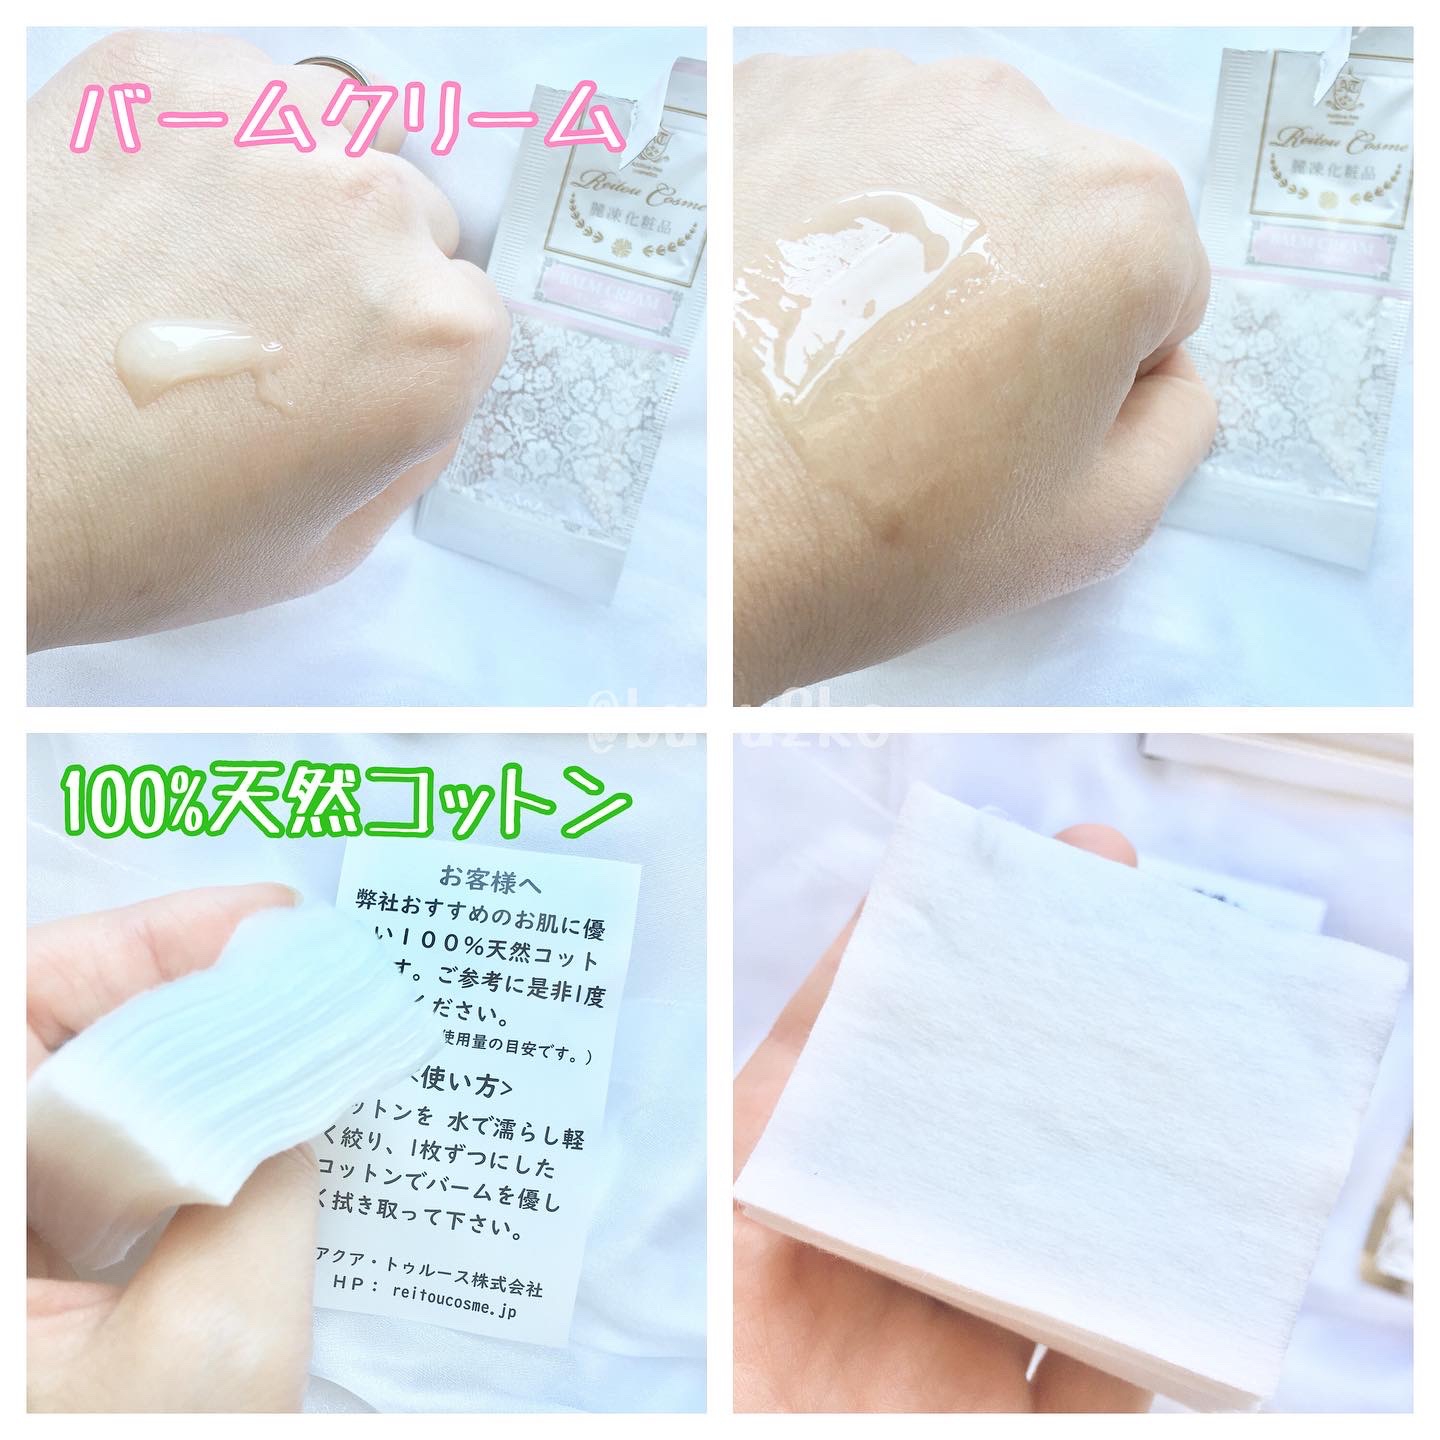 麗凍化粧品(Reitou Cosme) トライアルセットを使ったぶるどっくさんのクチコミ画像4